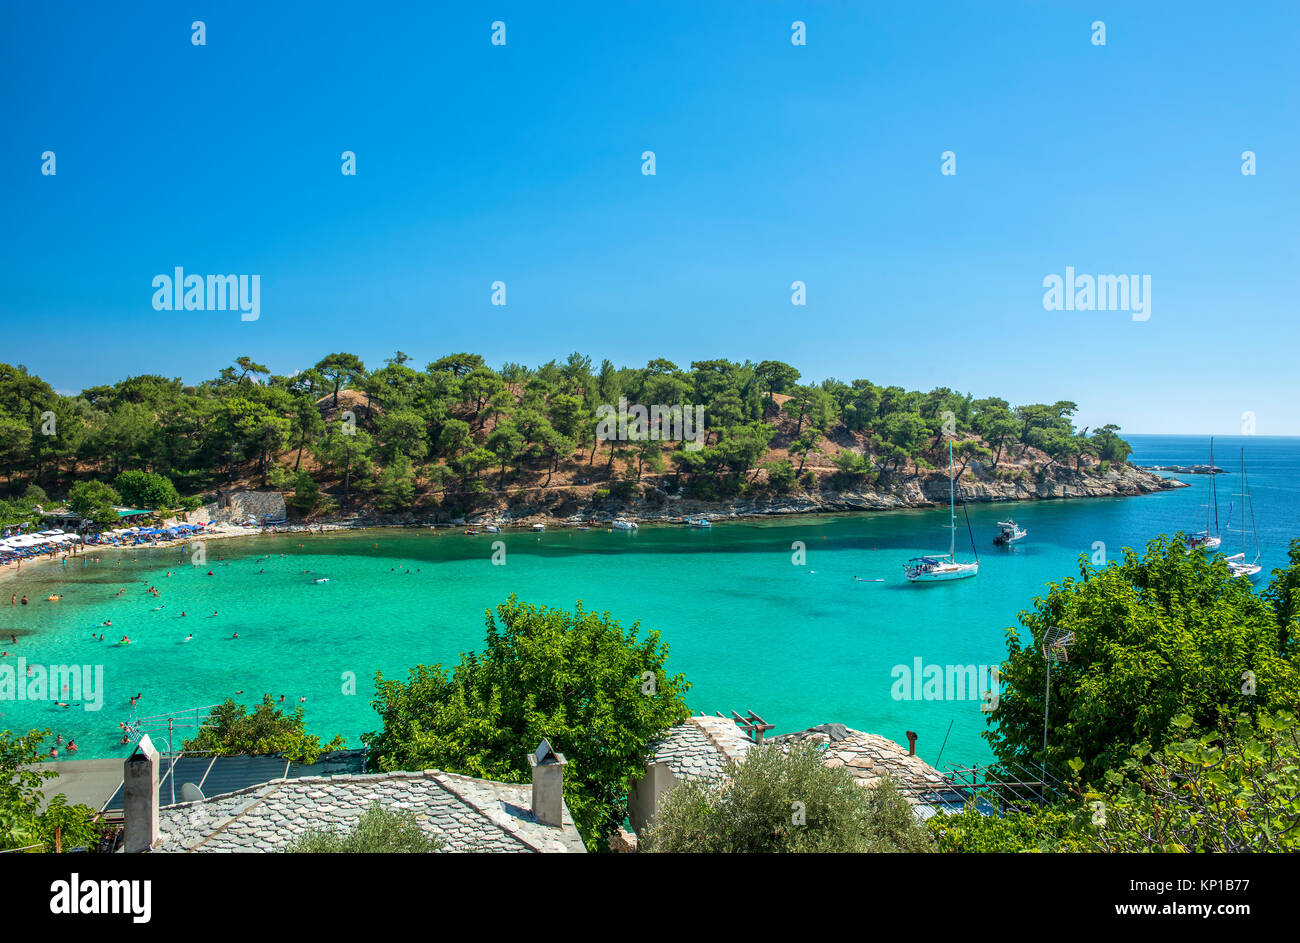 Yachten in der Küste der Insel mit Menschen schwimmen in turqoase Wasser, Panoramaaussicht Stockfoto